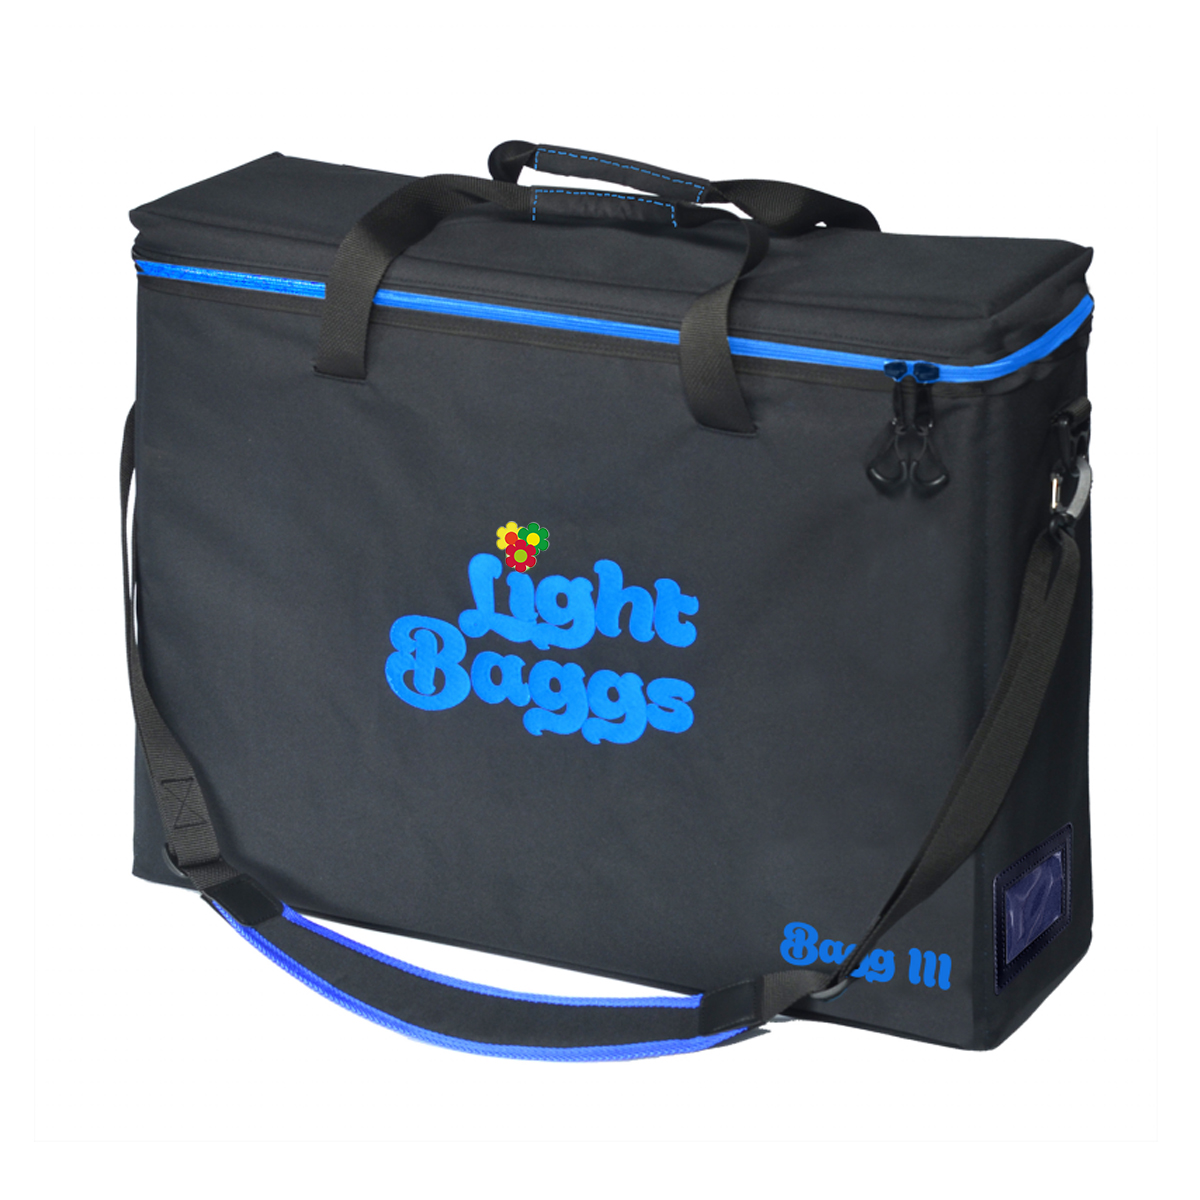 LightBaggs BAGG 3 mit Reißverschluss